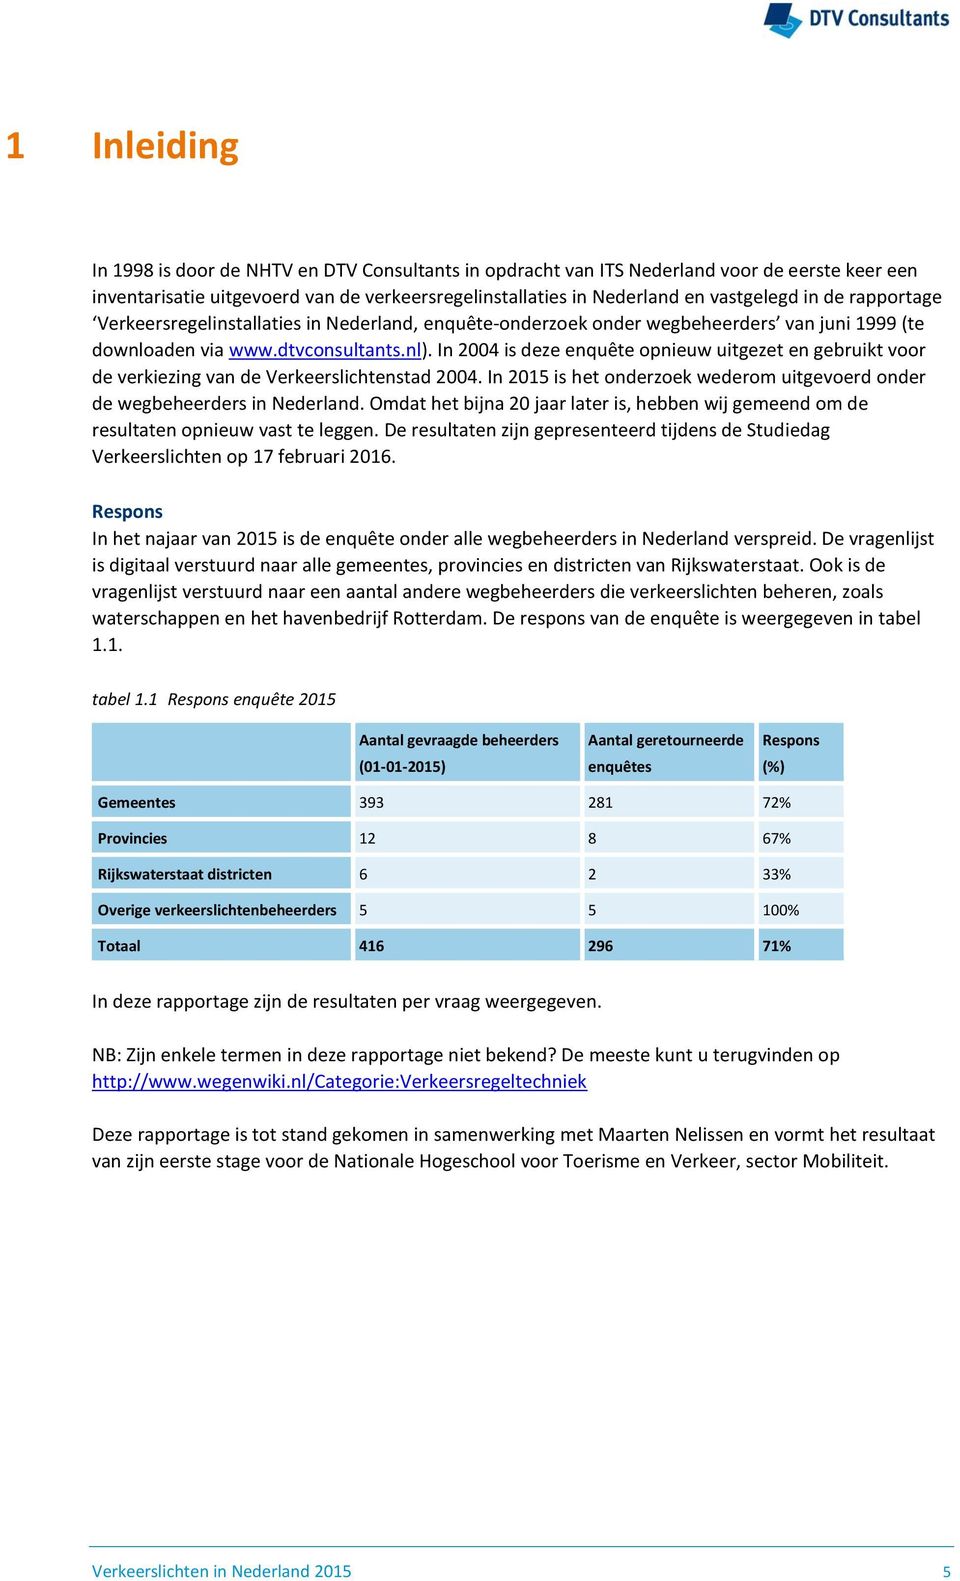 In 2004 is deze enquête opnieuw uitgezet en gebruikt voor de verkiezing van de Verkeerslichtenstad 2004. In 2015 is het onderzoek wederom uitgevoerd onder de wegbeheerders in Nederland.